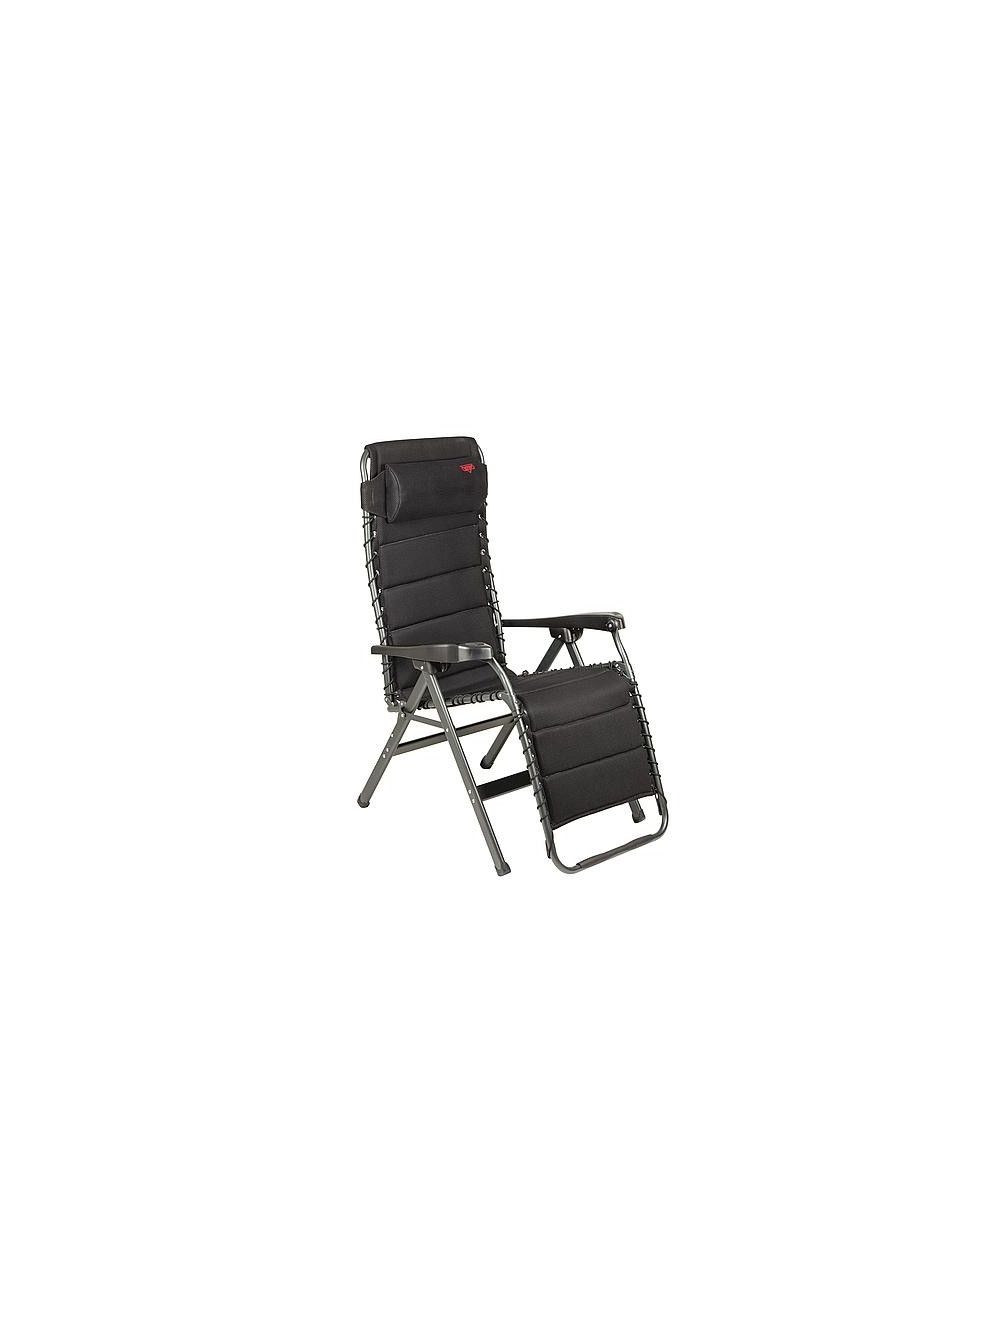 Prestatie Belonend parallel Crespo Relaxstoel AL 232/80 zwart air nu € 264.95 | De specialist in Crespo  uit het Kampeerstoelen assortiment| Rien de Wolf